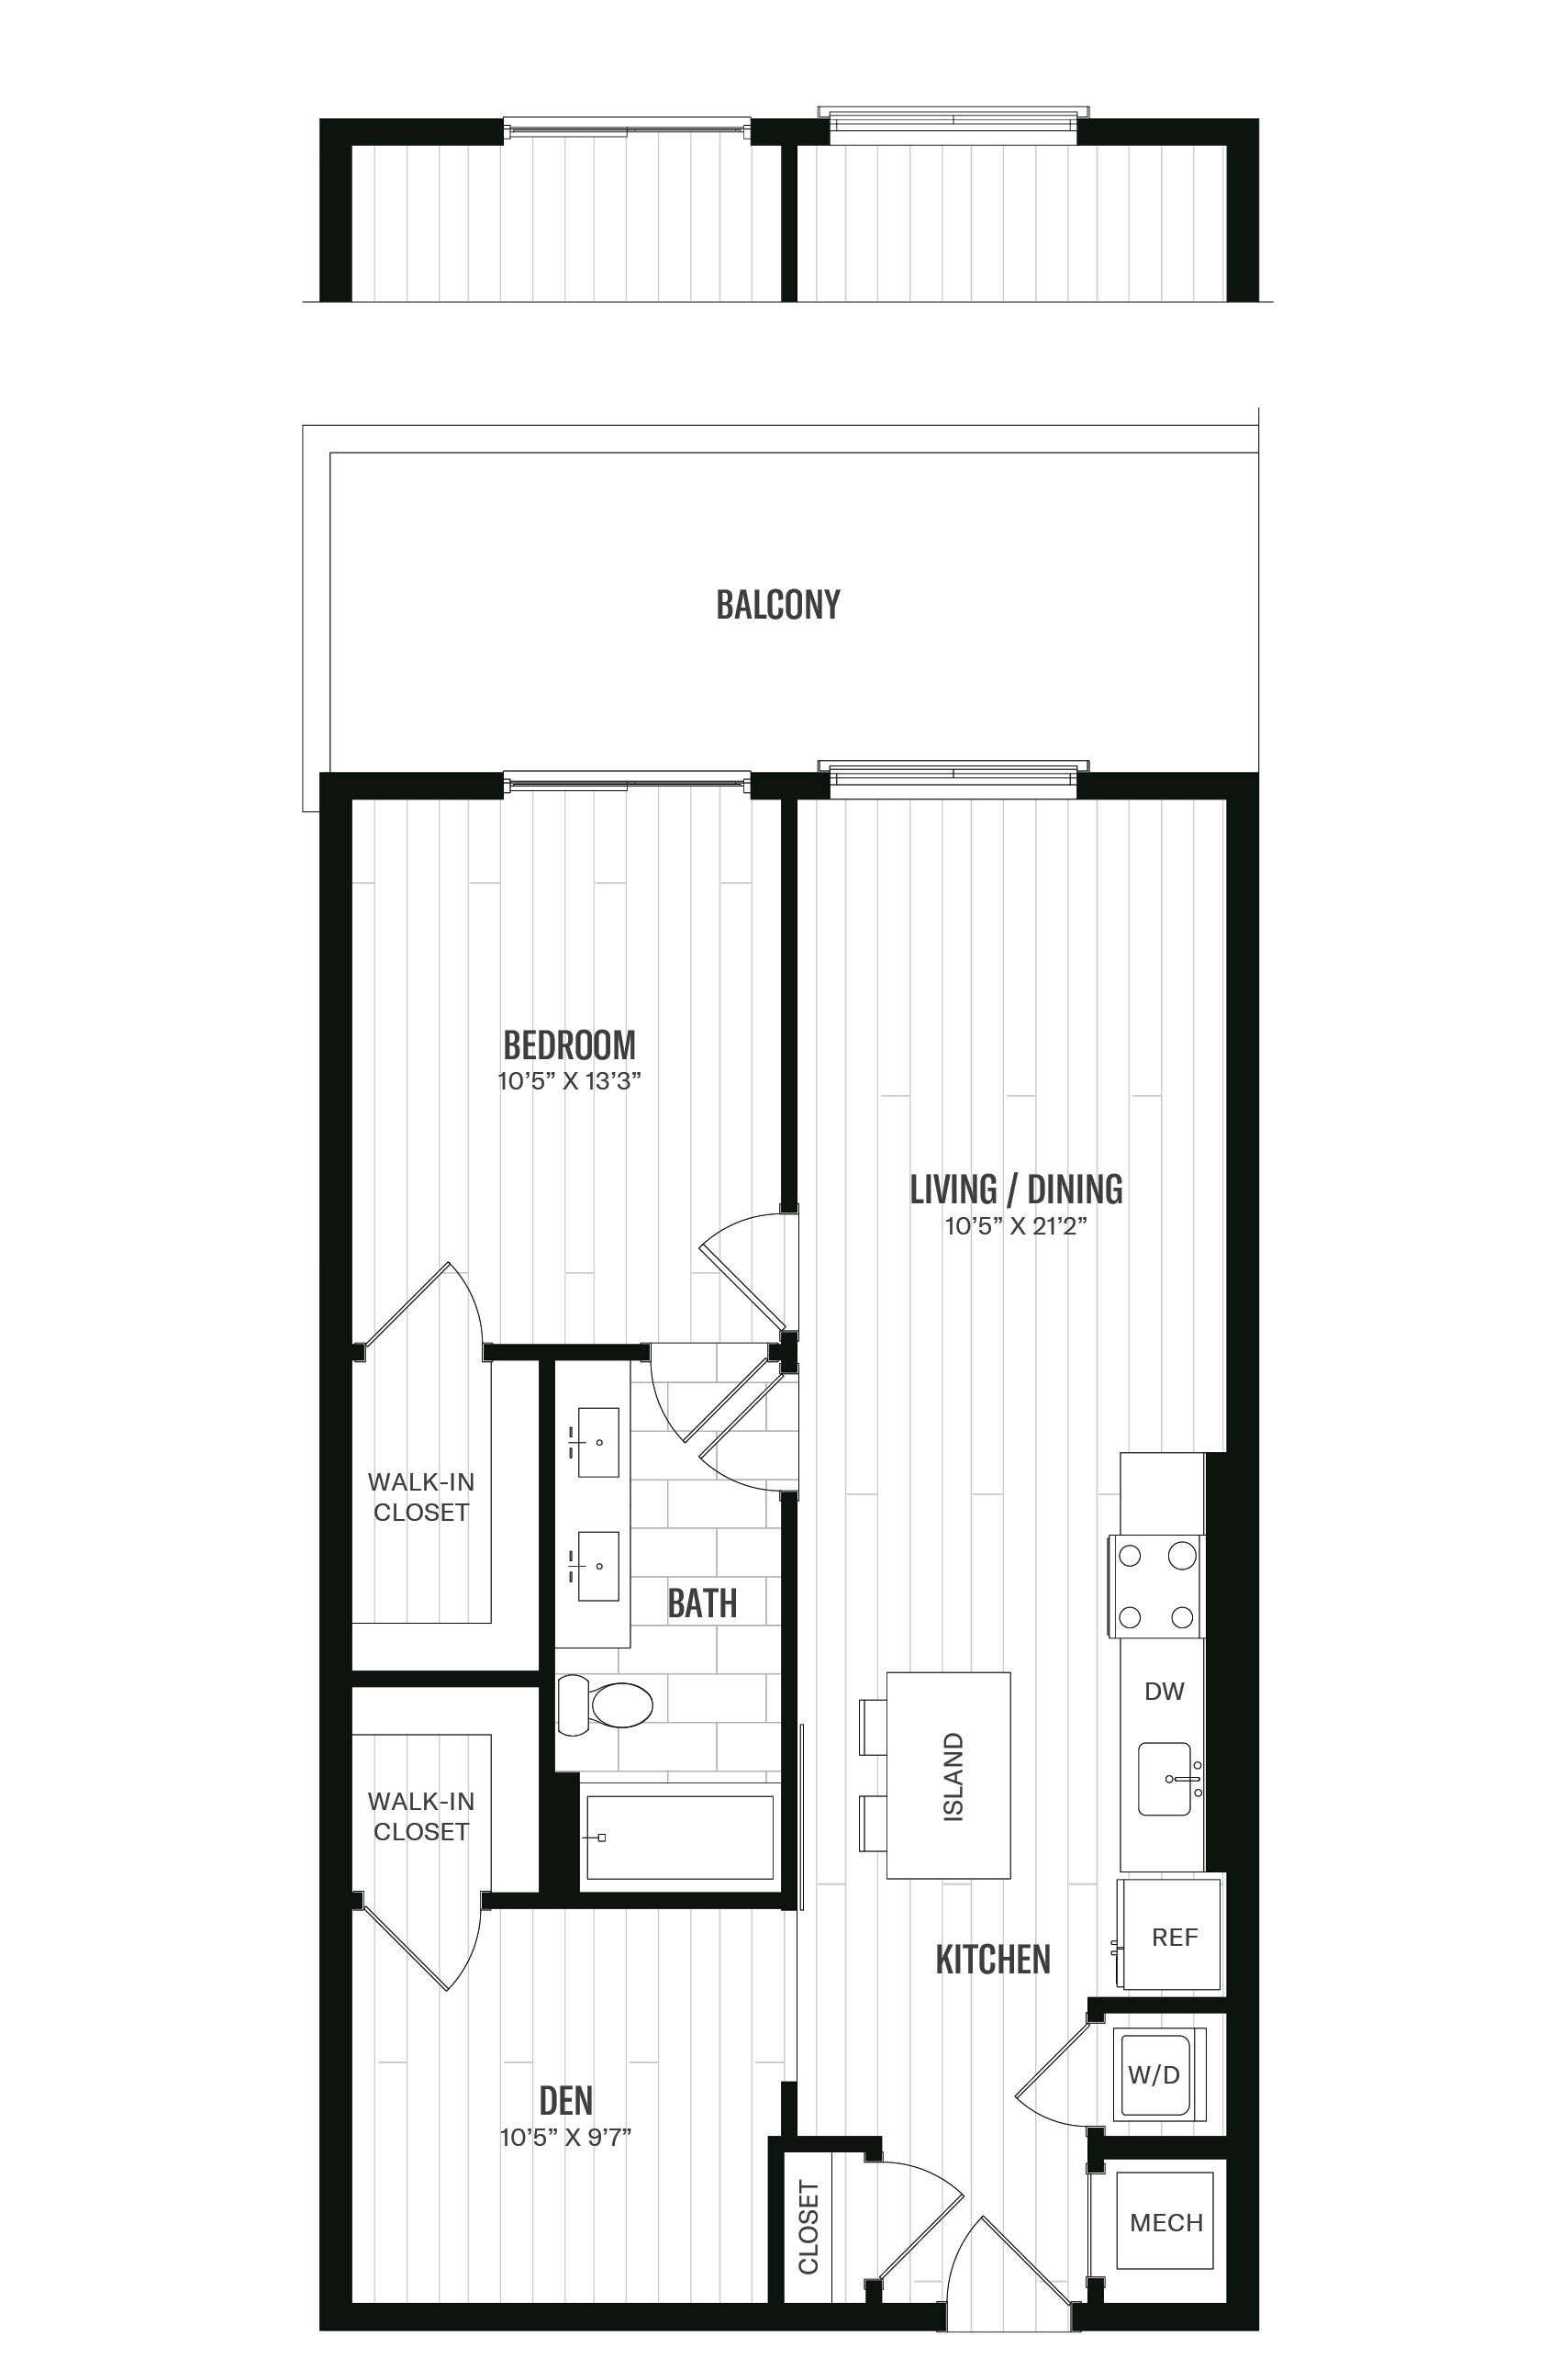 Floorplan image of unit 434